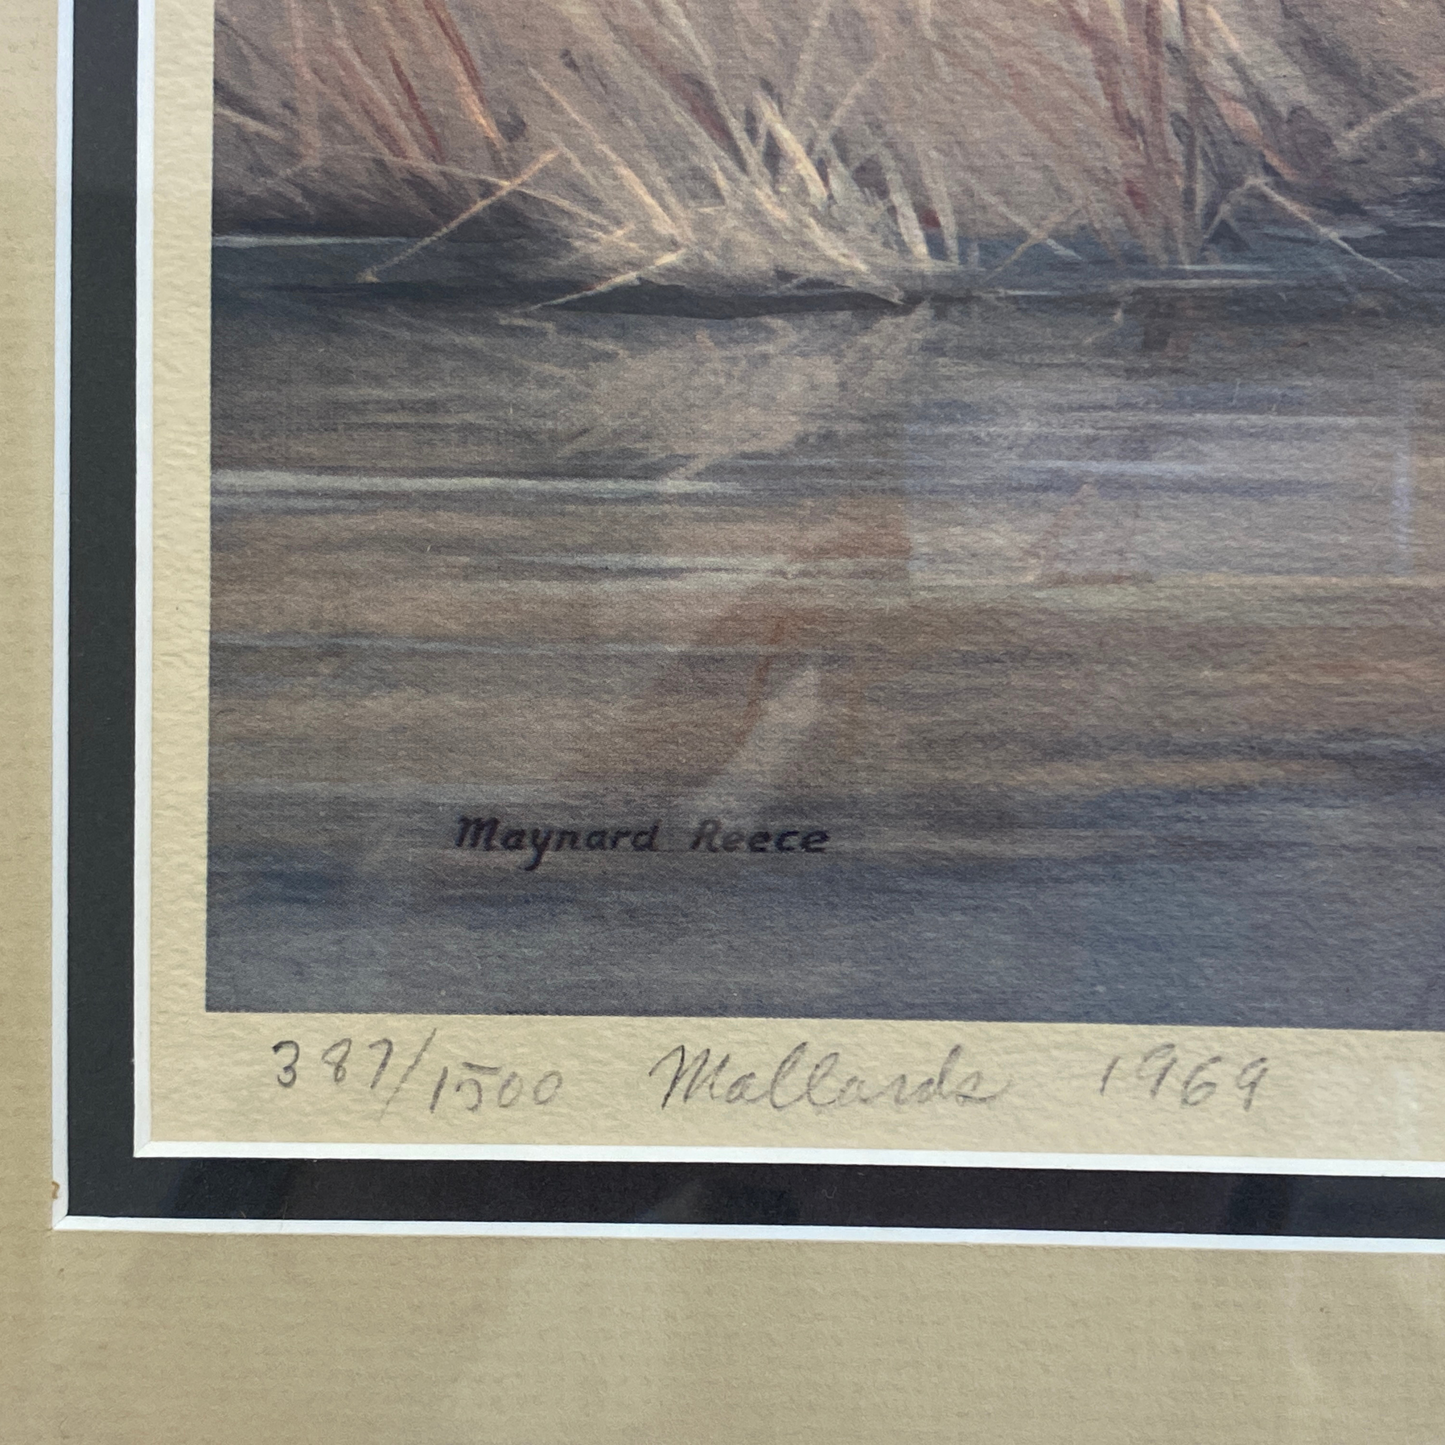 Maynard Reece "Mallards" Signed & Framed Print